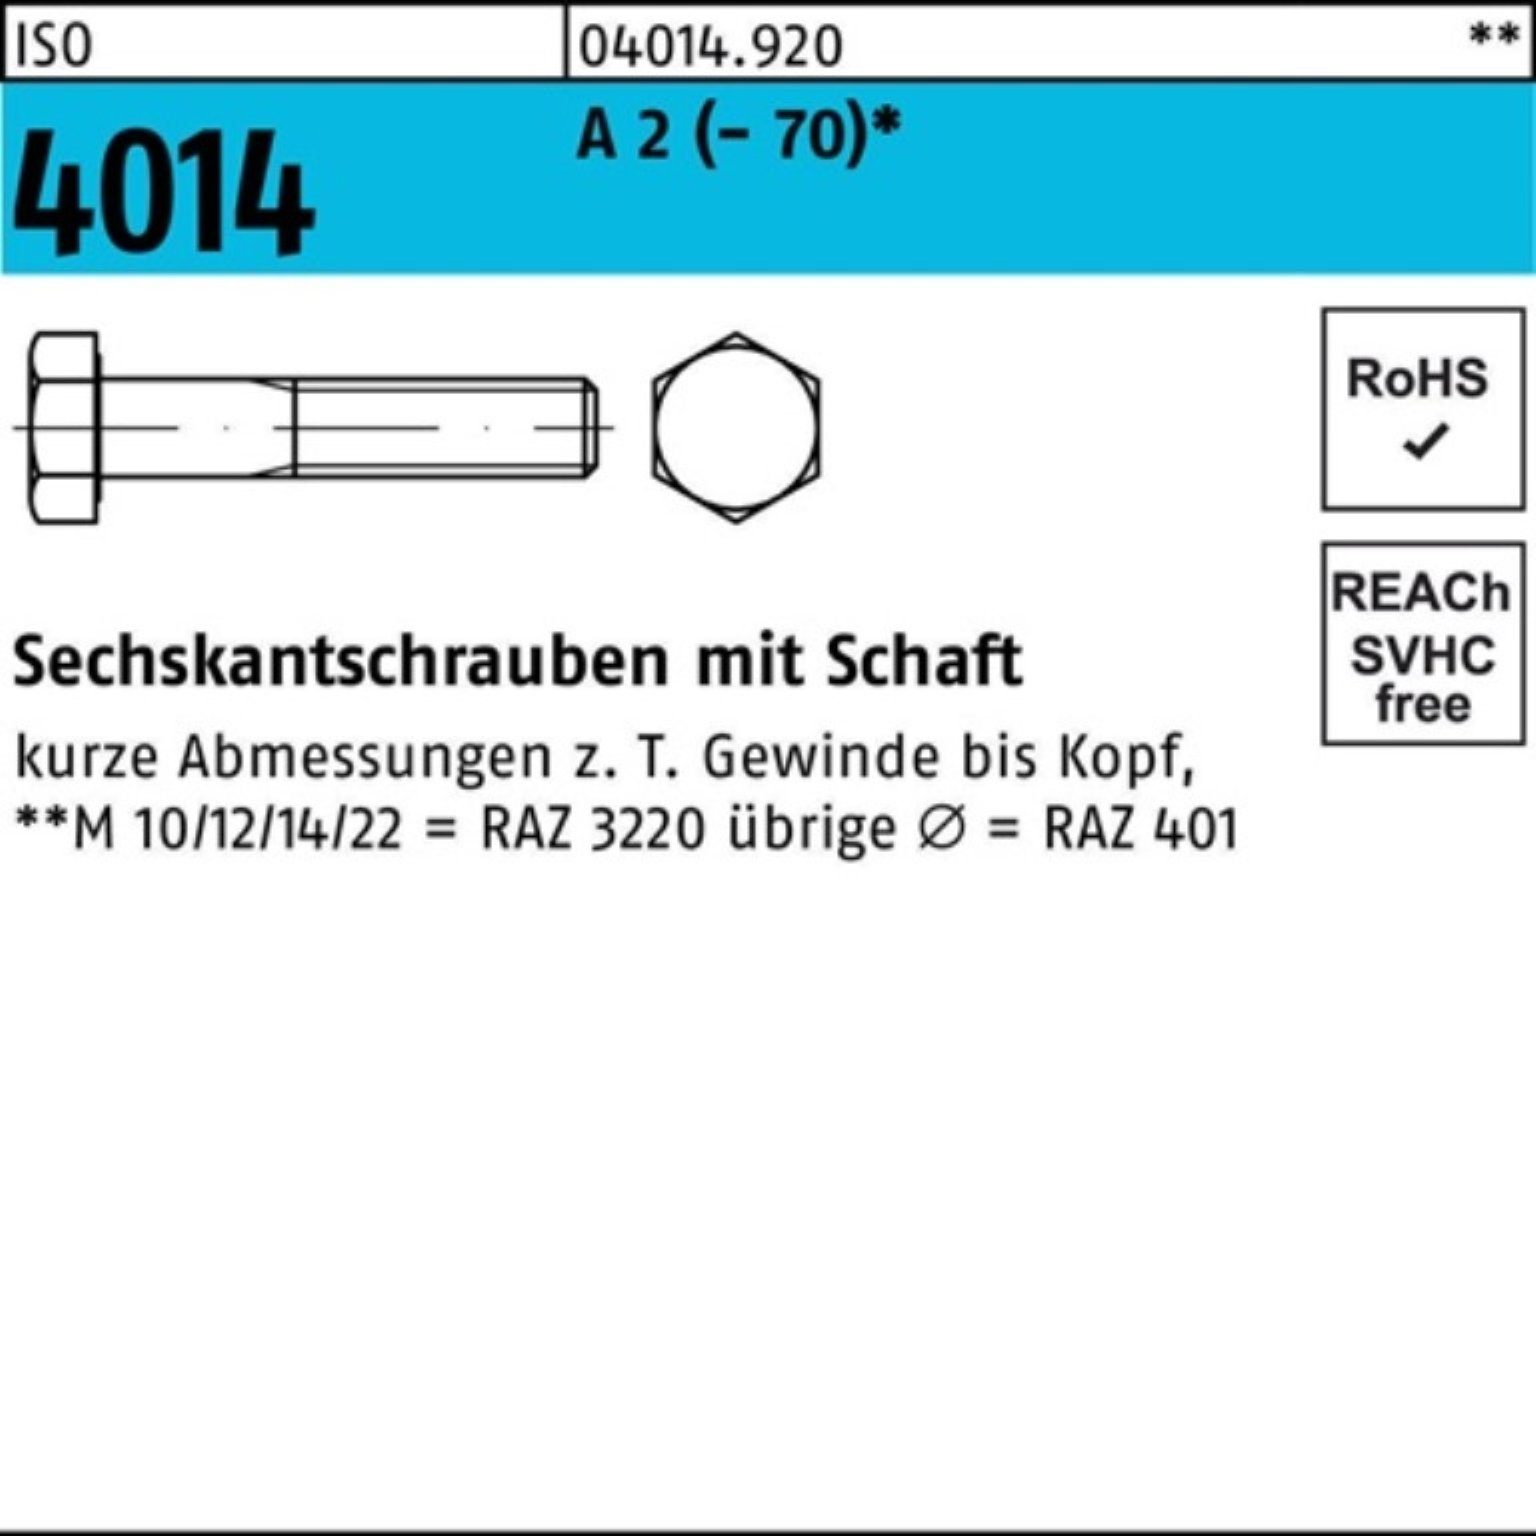 Bufab Sechskantschraube 100er Pack Sechskantschraube ISO 4014 Schaft M14x 100 A 2 (70) 50 St